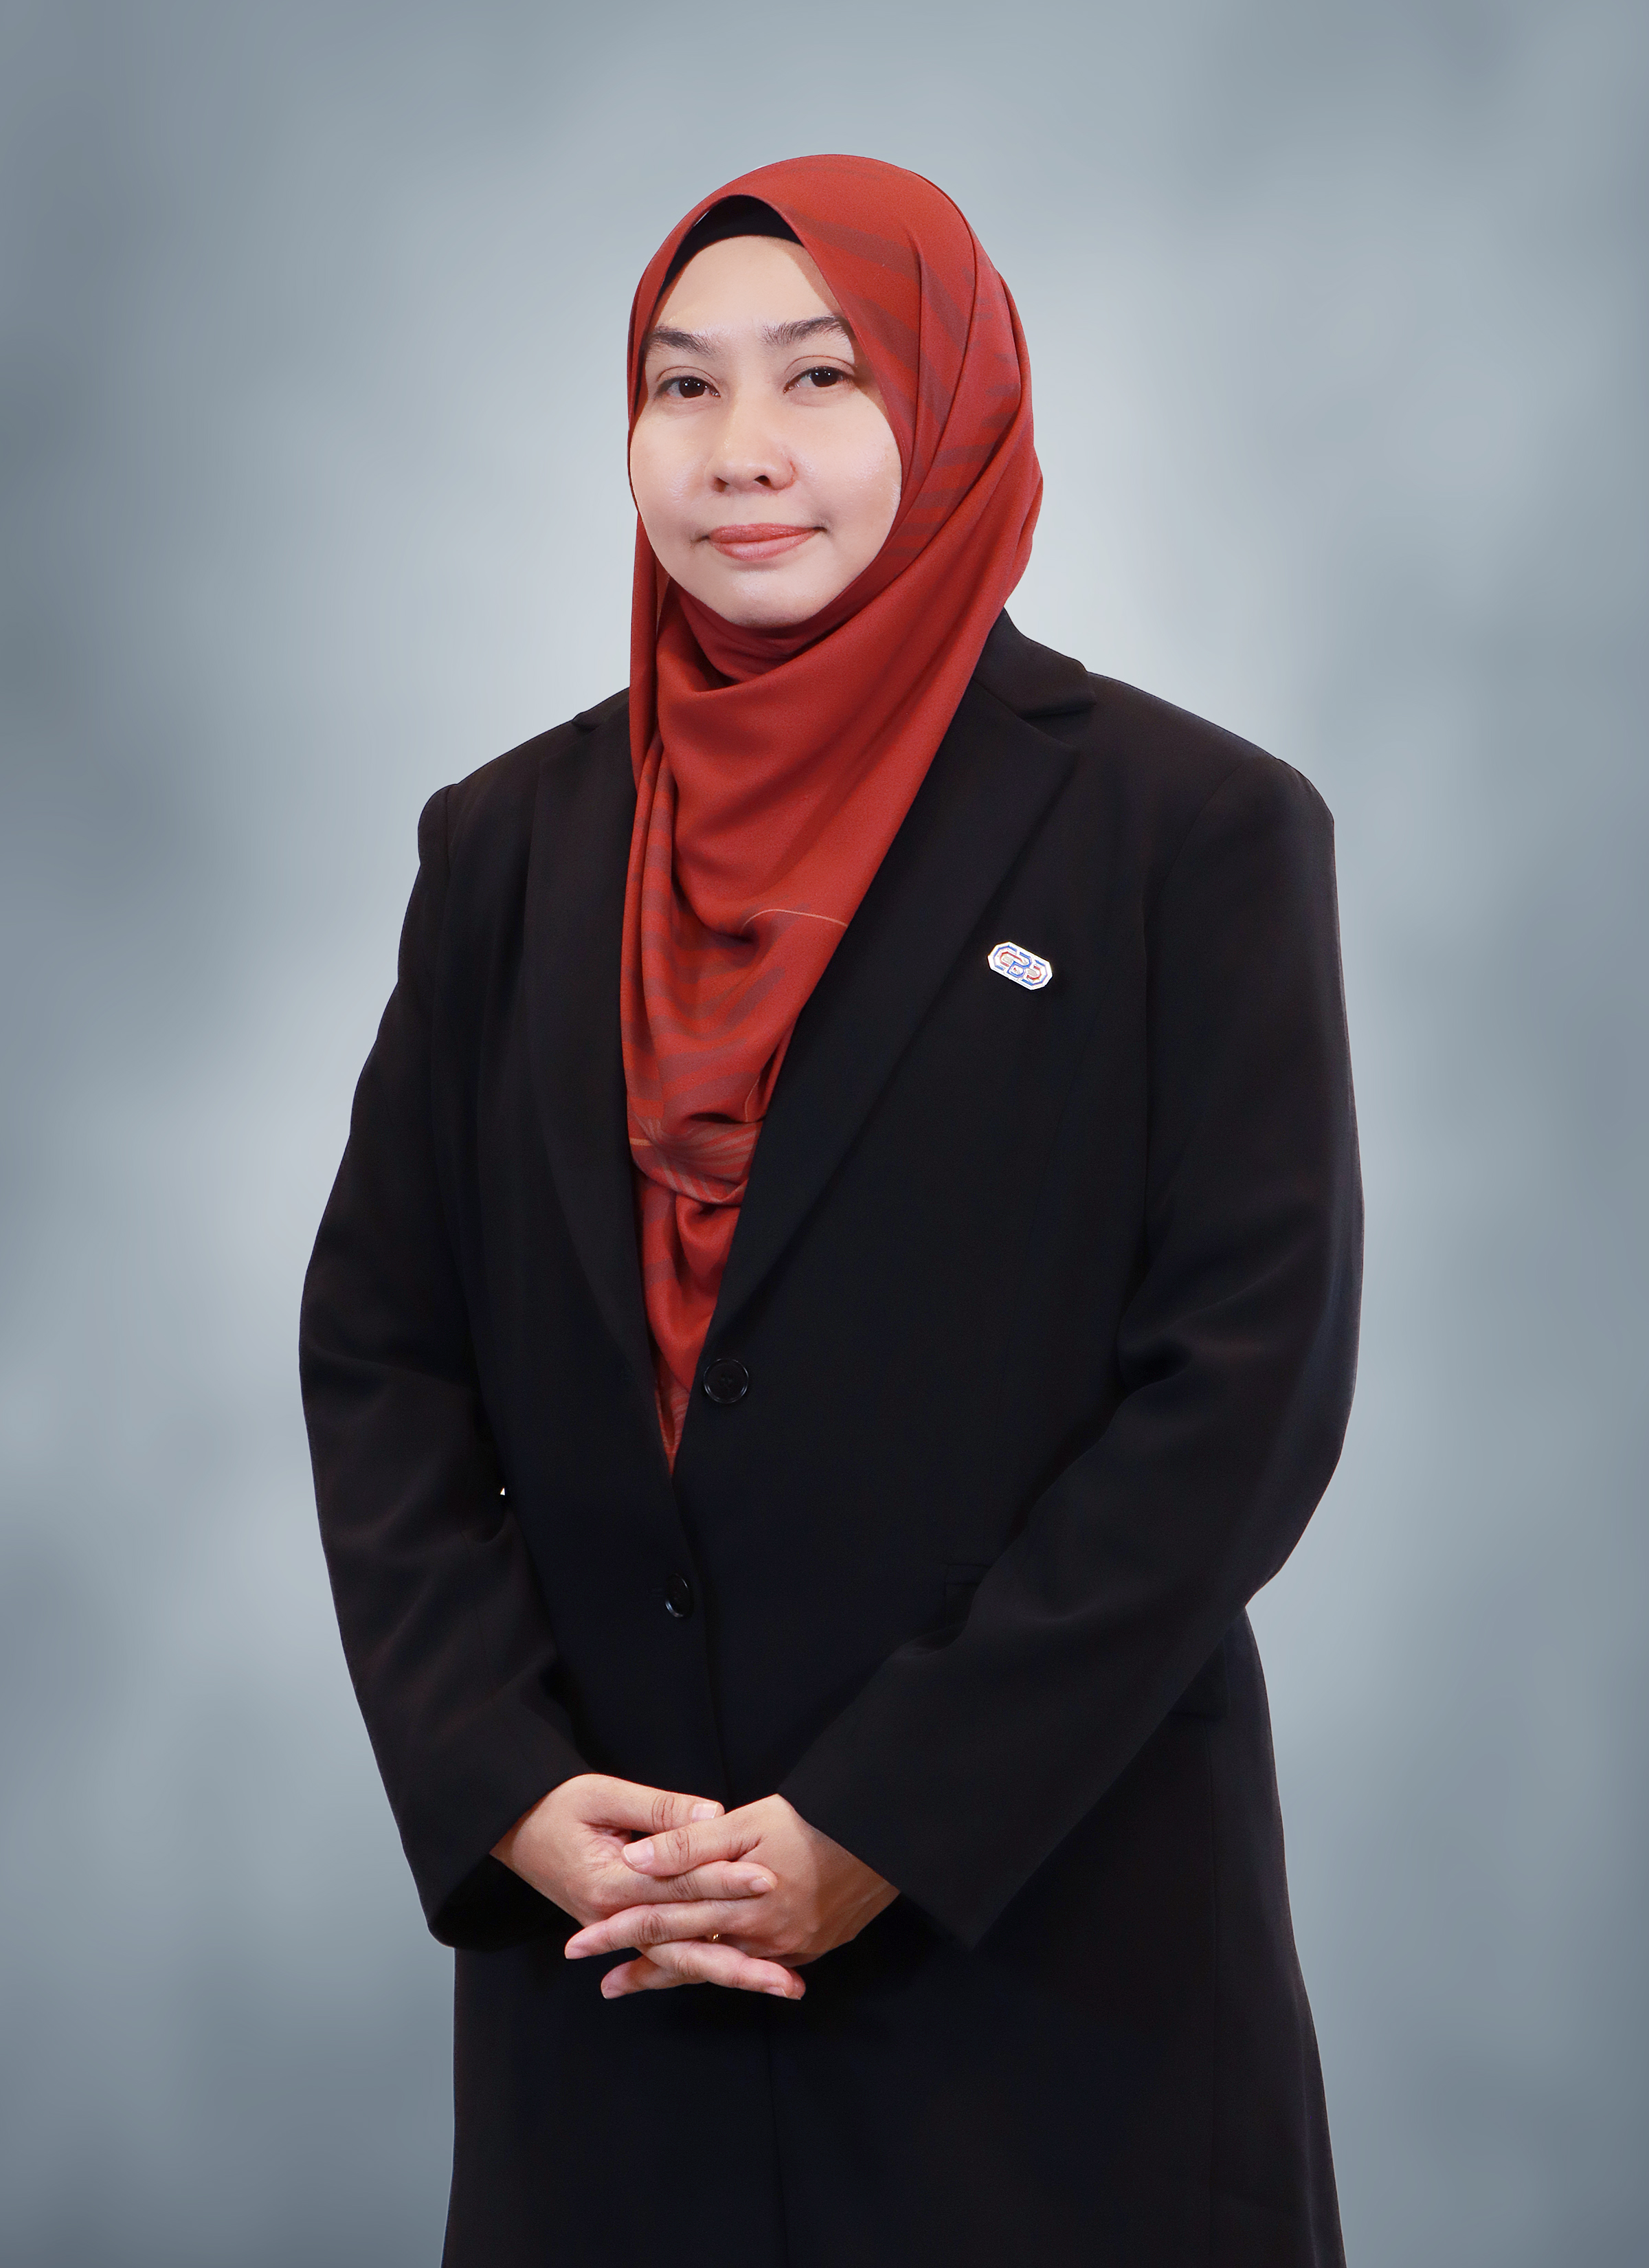 Dr. Marhanum Binti Che Mohd Salleh